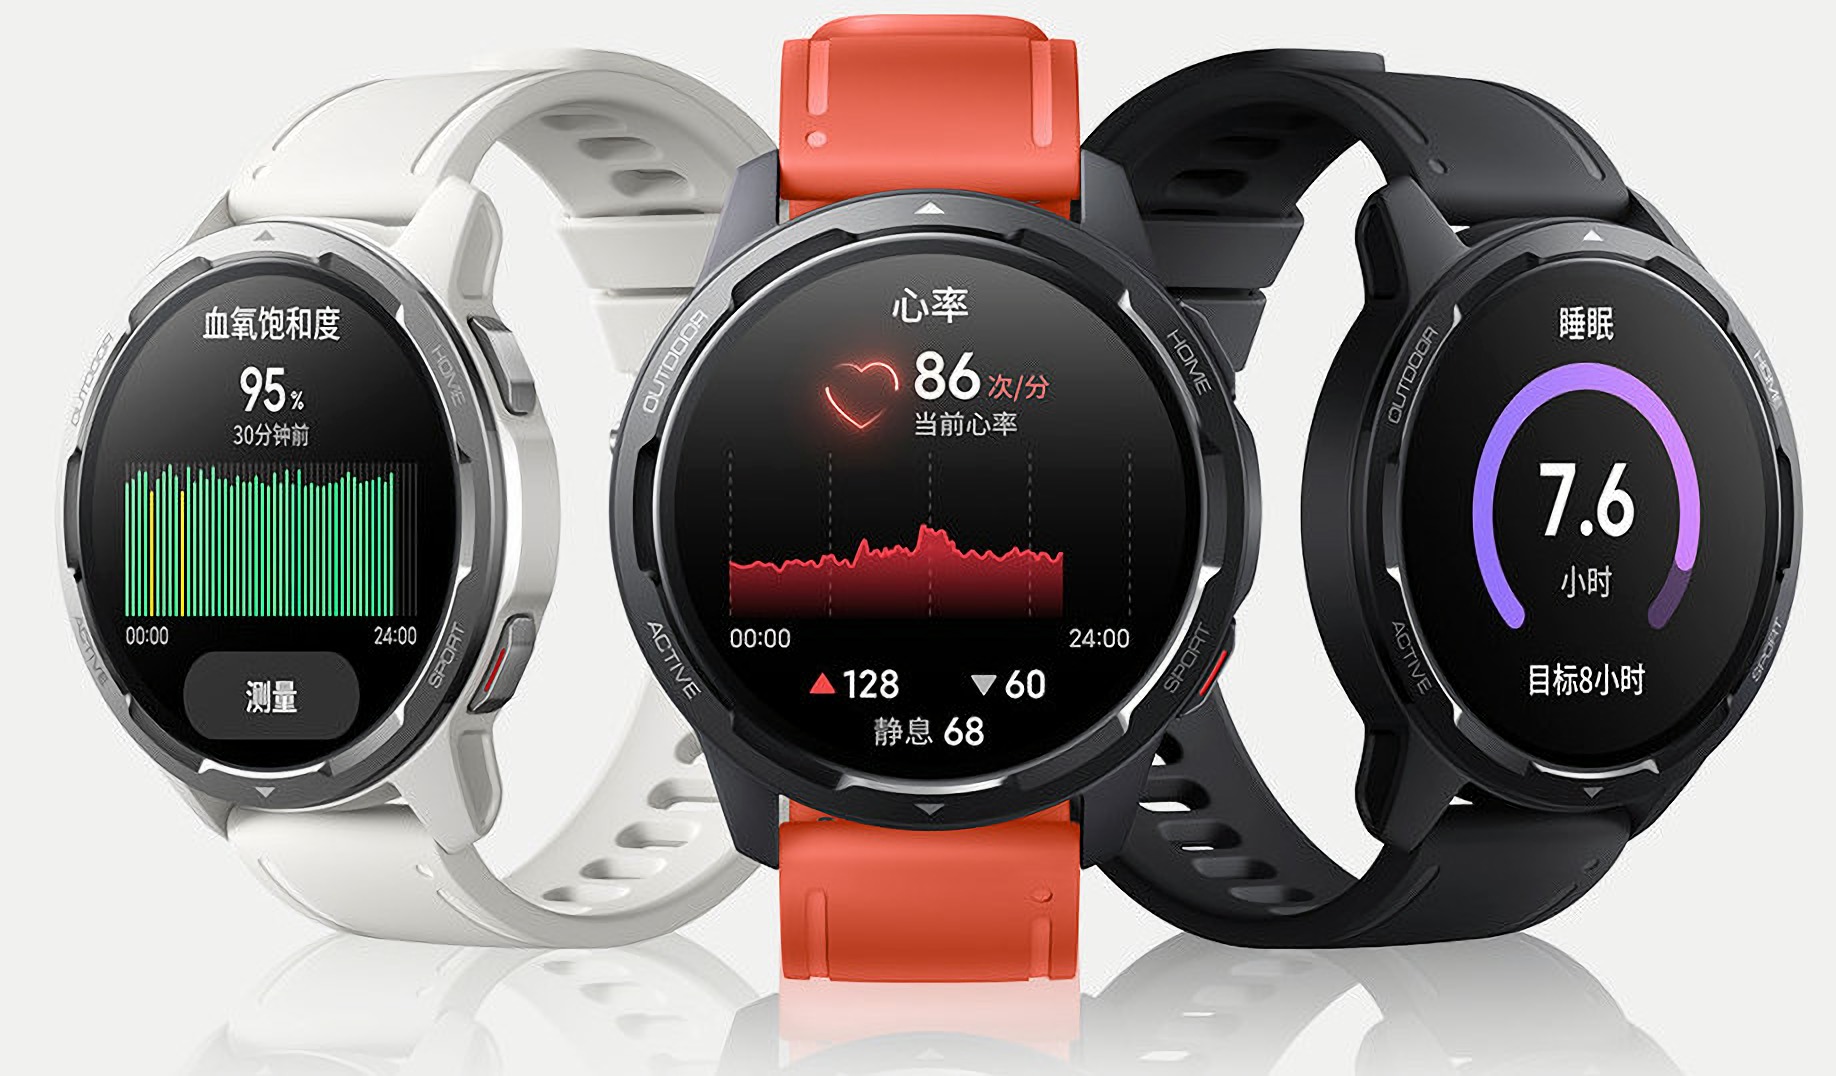 Xiaomi oznámilo bezdrátová sluchátka s podporou LHDC a chytré hodinky s GPS